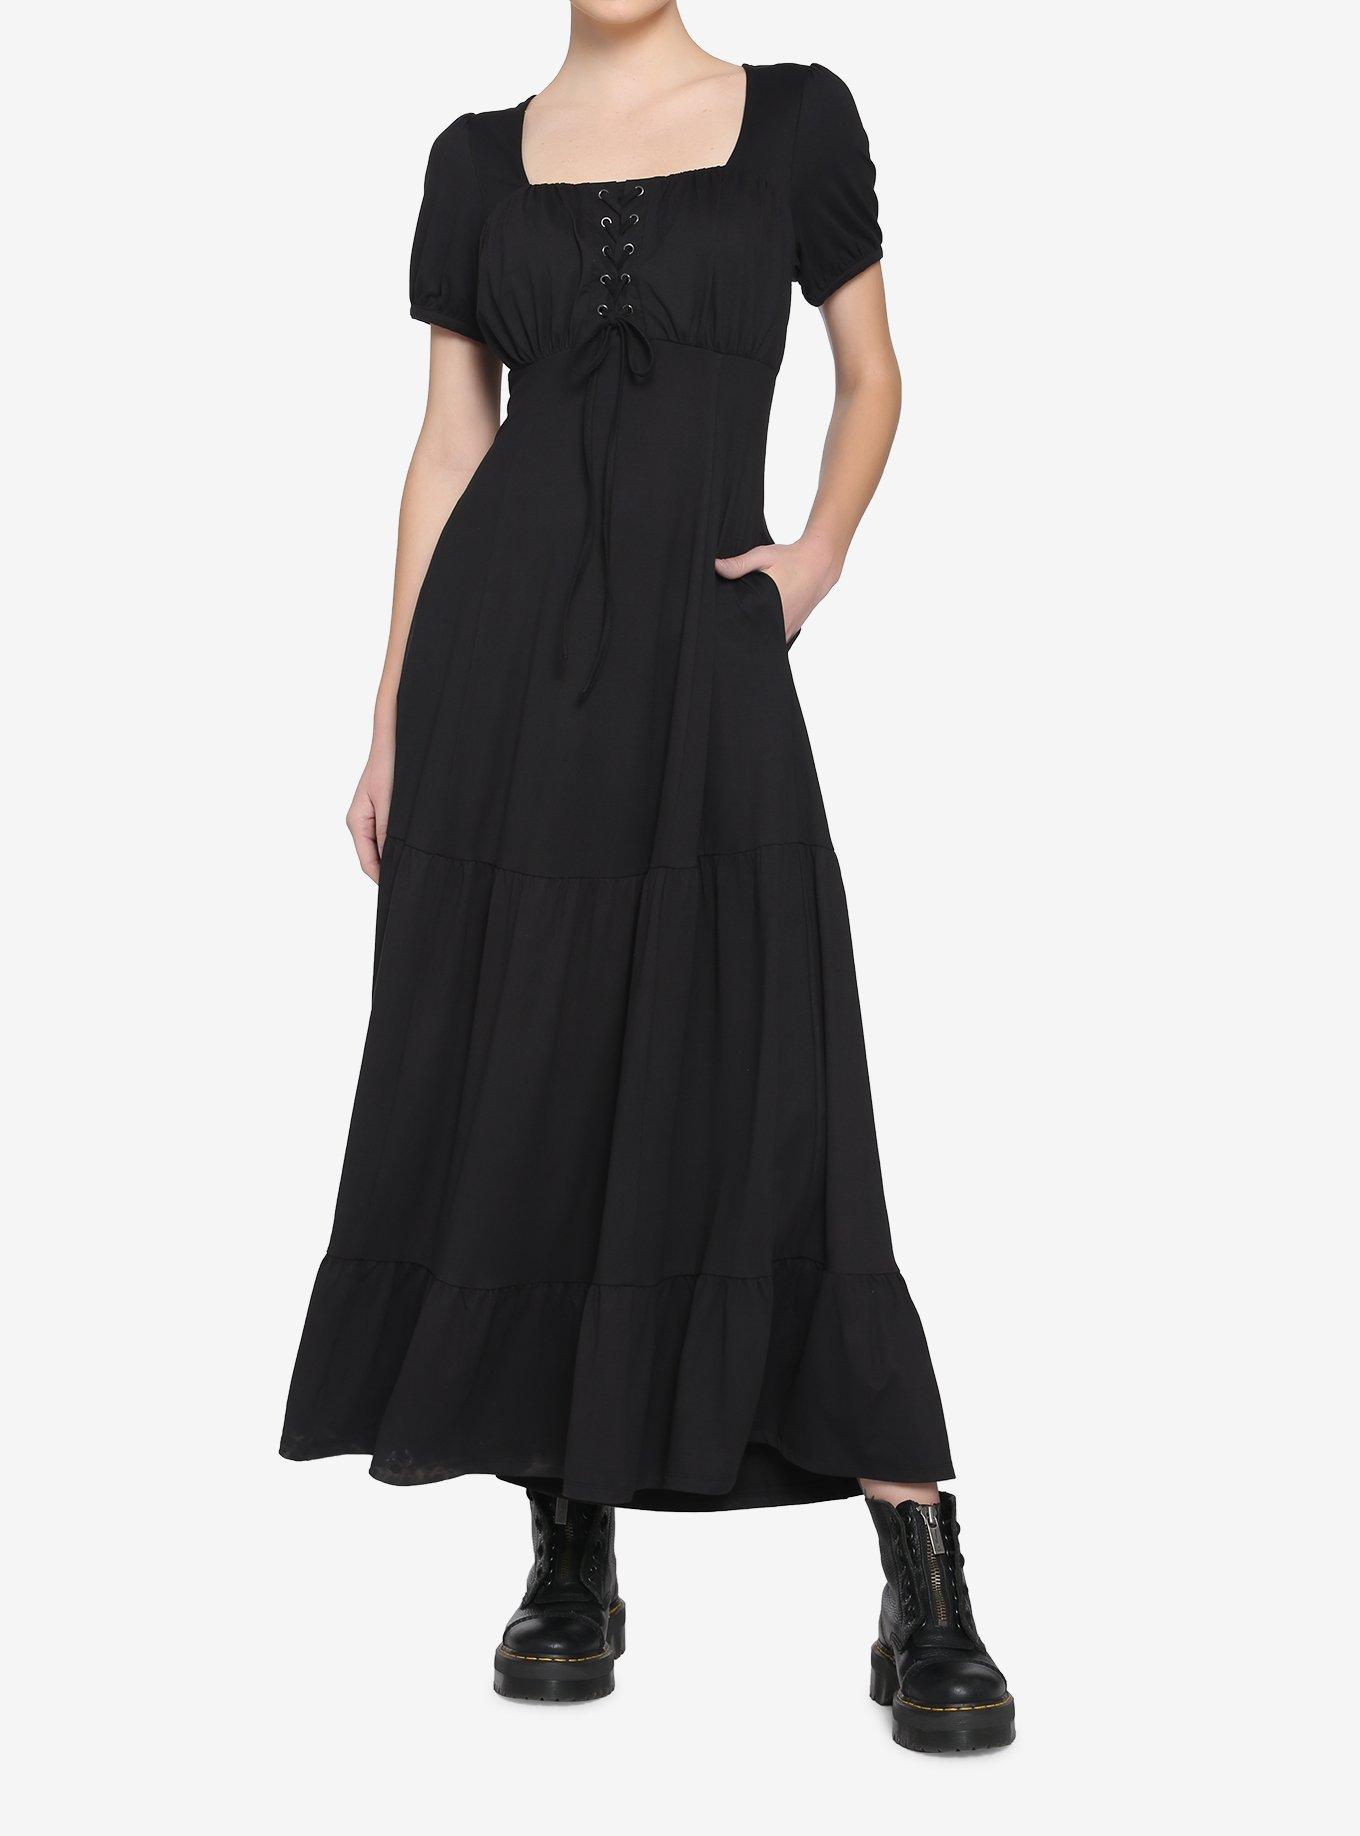 Black Empire Maxi Dress, BLACK, hi-res